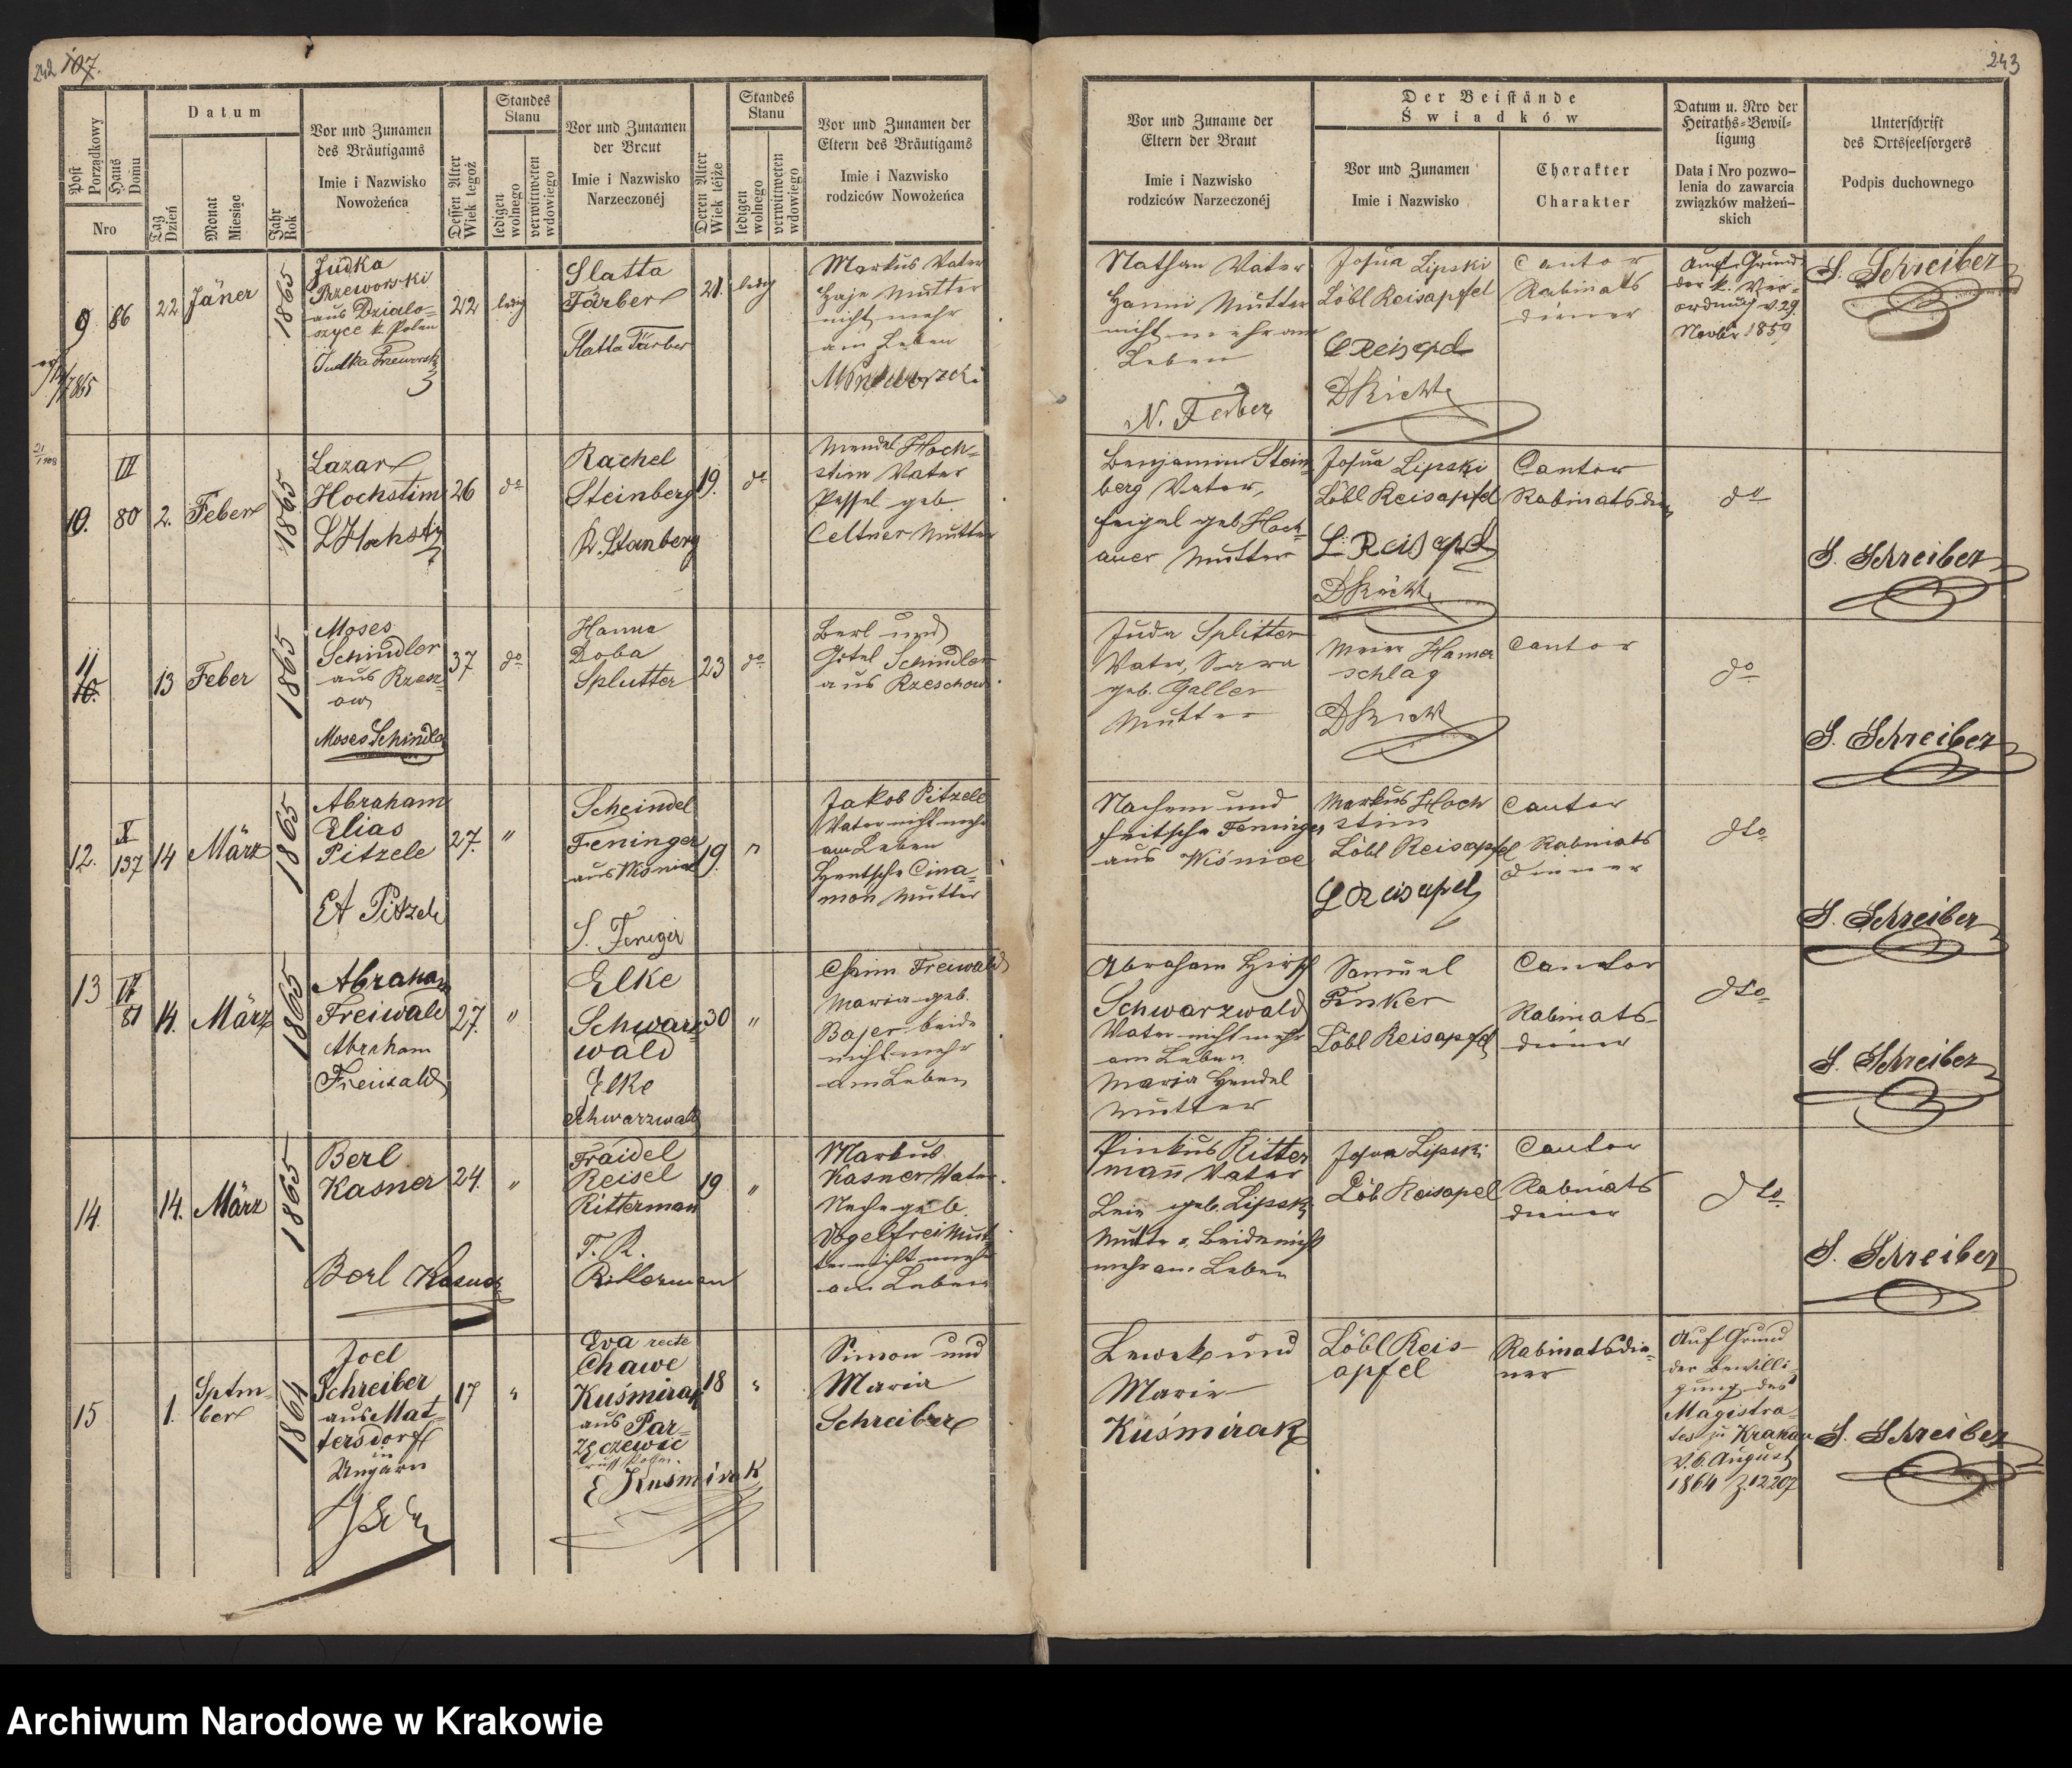 Skan z jednostki: Trauungs-Buch księga zawartych małżeństw od roku 1852 dnia 20. Kwietnia